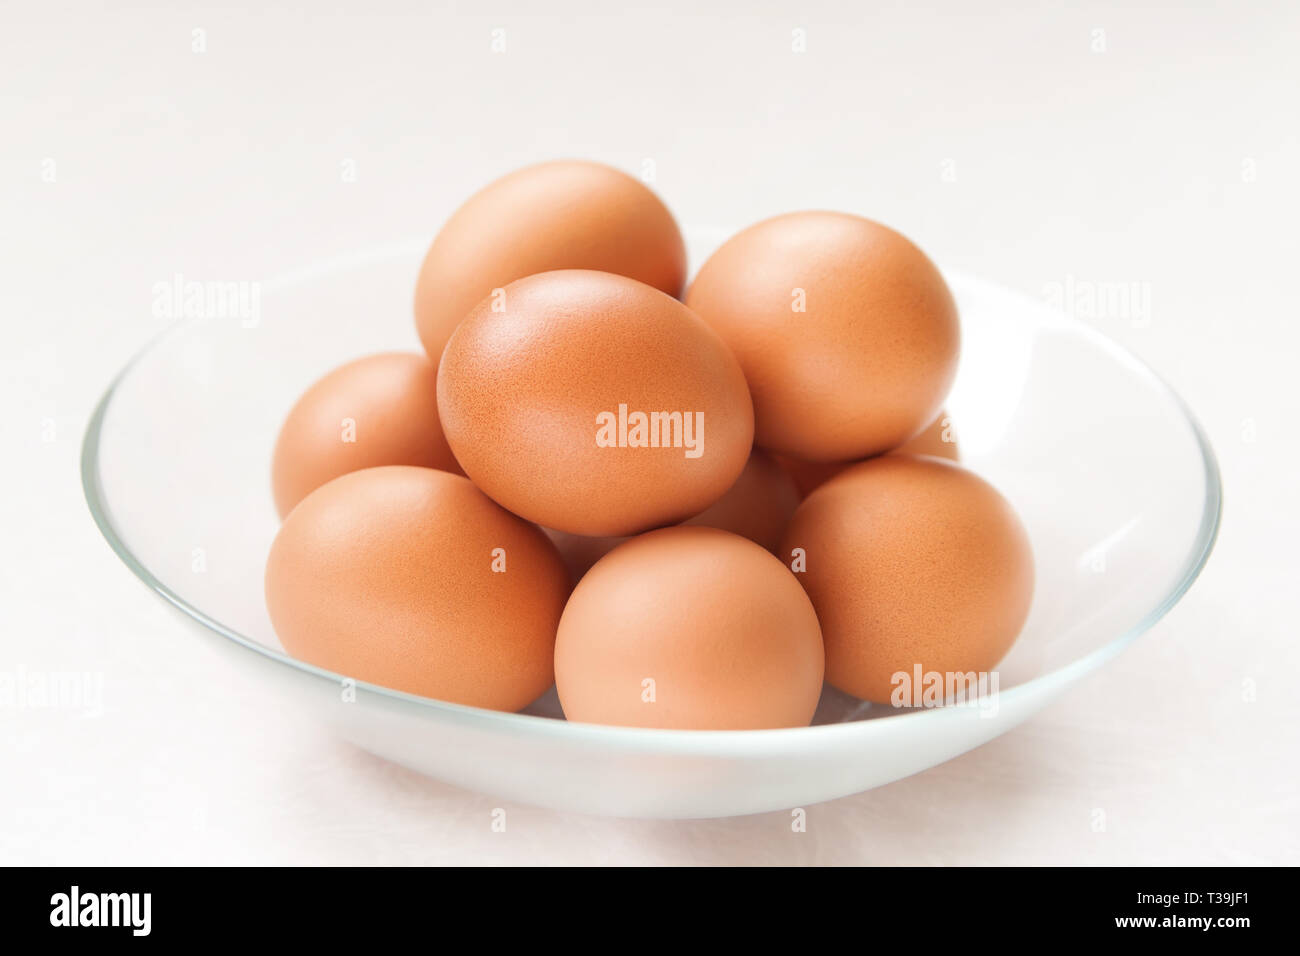 El plato de la gallina de los huevos de color marrón fresco Foto de stock